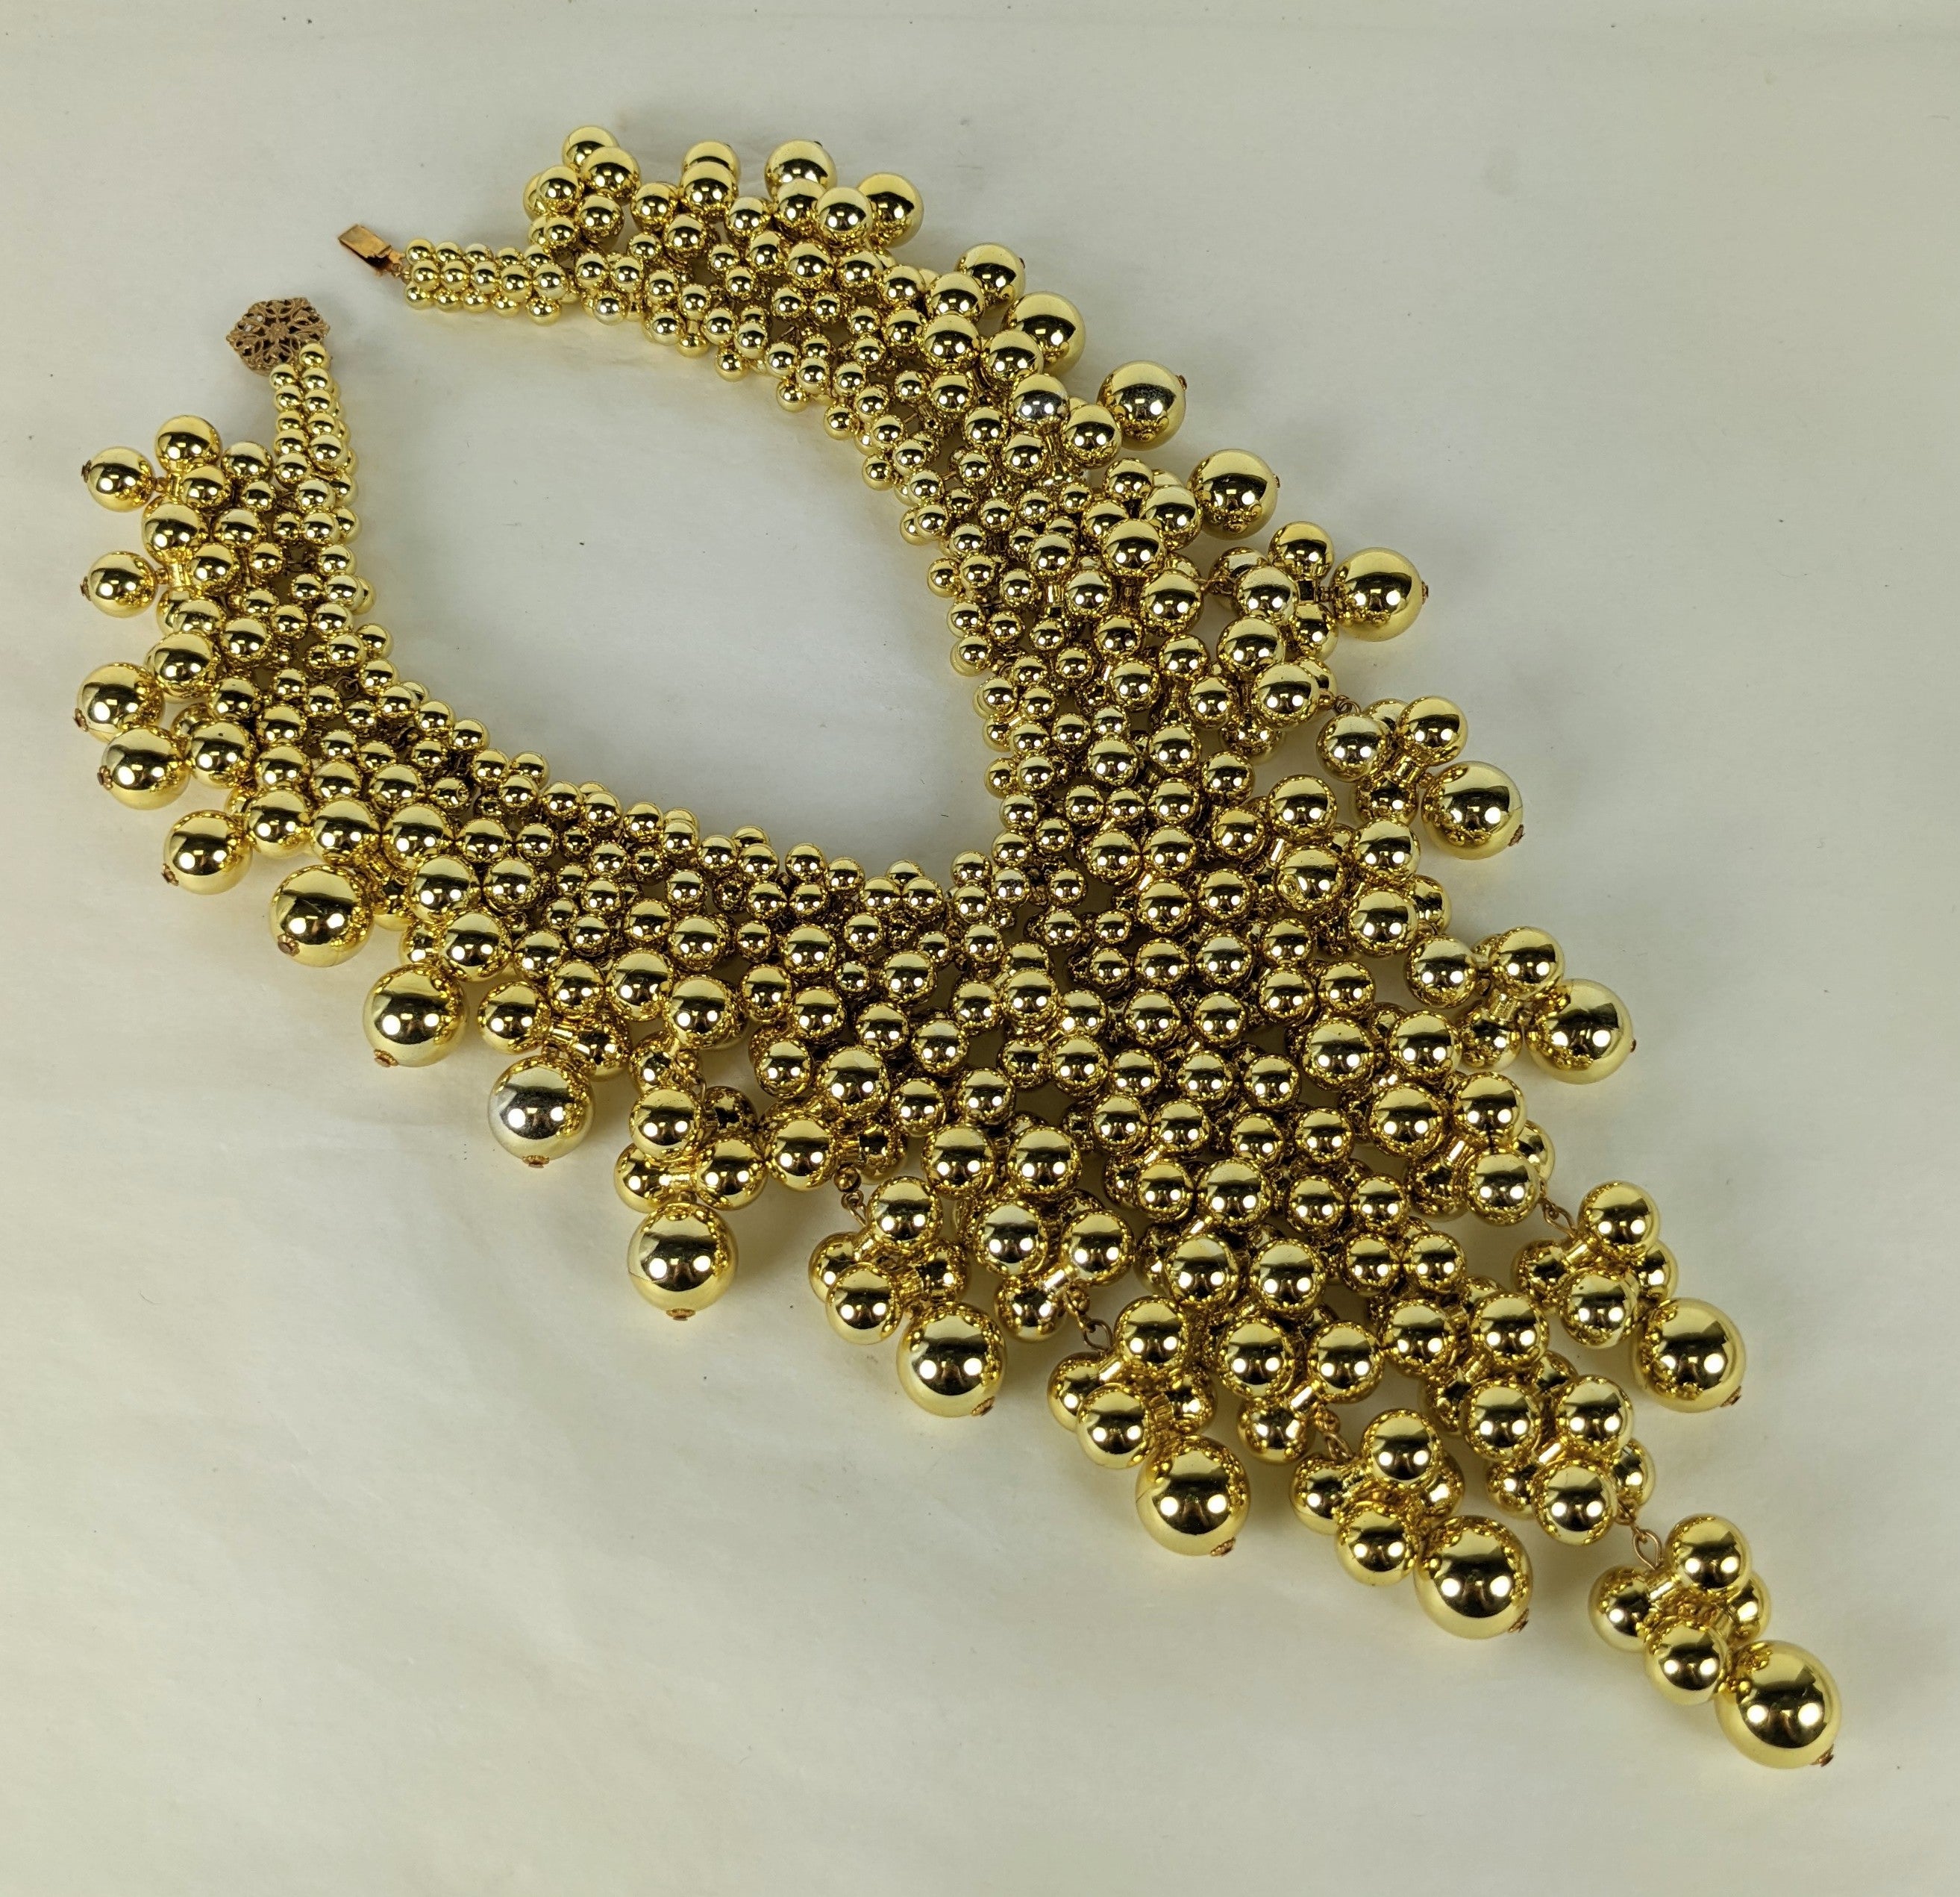 Le Gold Bubble Bib de Miriam Haskell est composé de dizaines de cloches muettes en résine plaquée or qui s'imbriquent les unes dans les autres pour former des vrilles de différentes longueurs sur ce collier massif mais léger. 
États-Unis, années